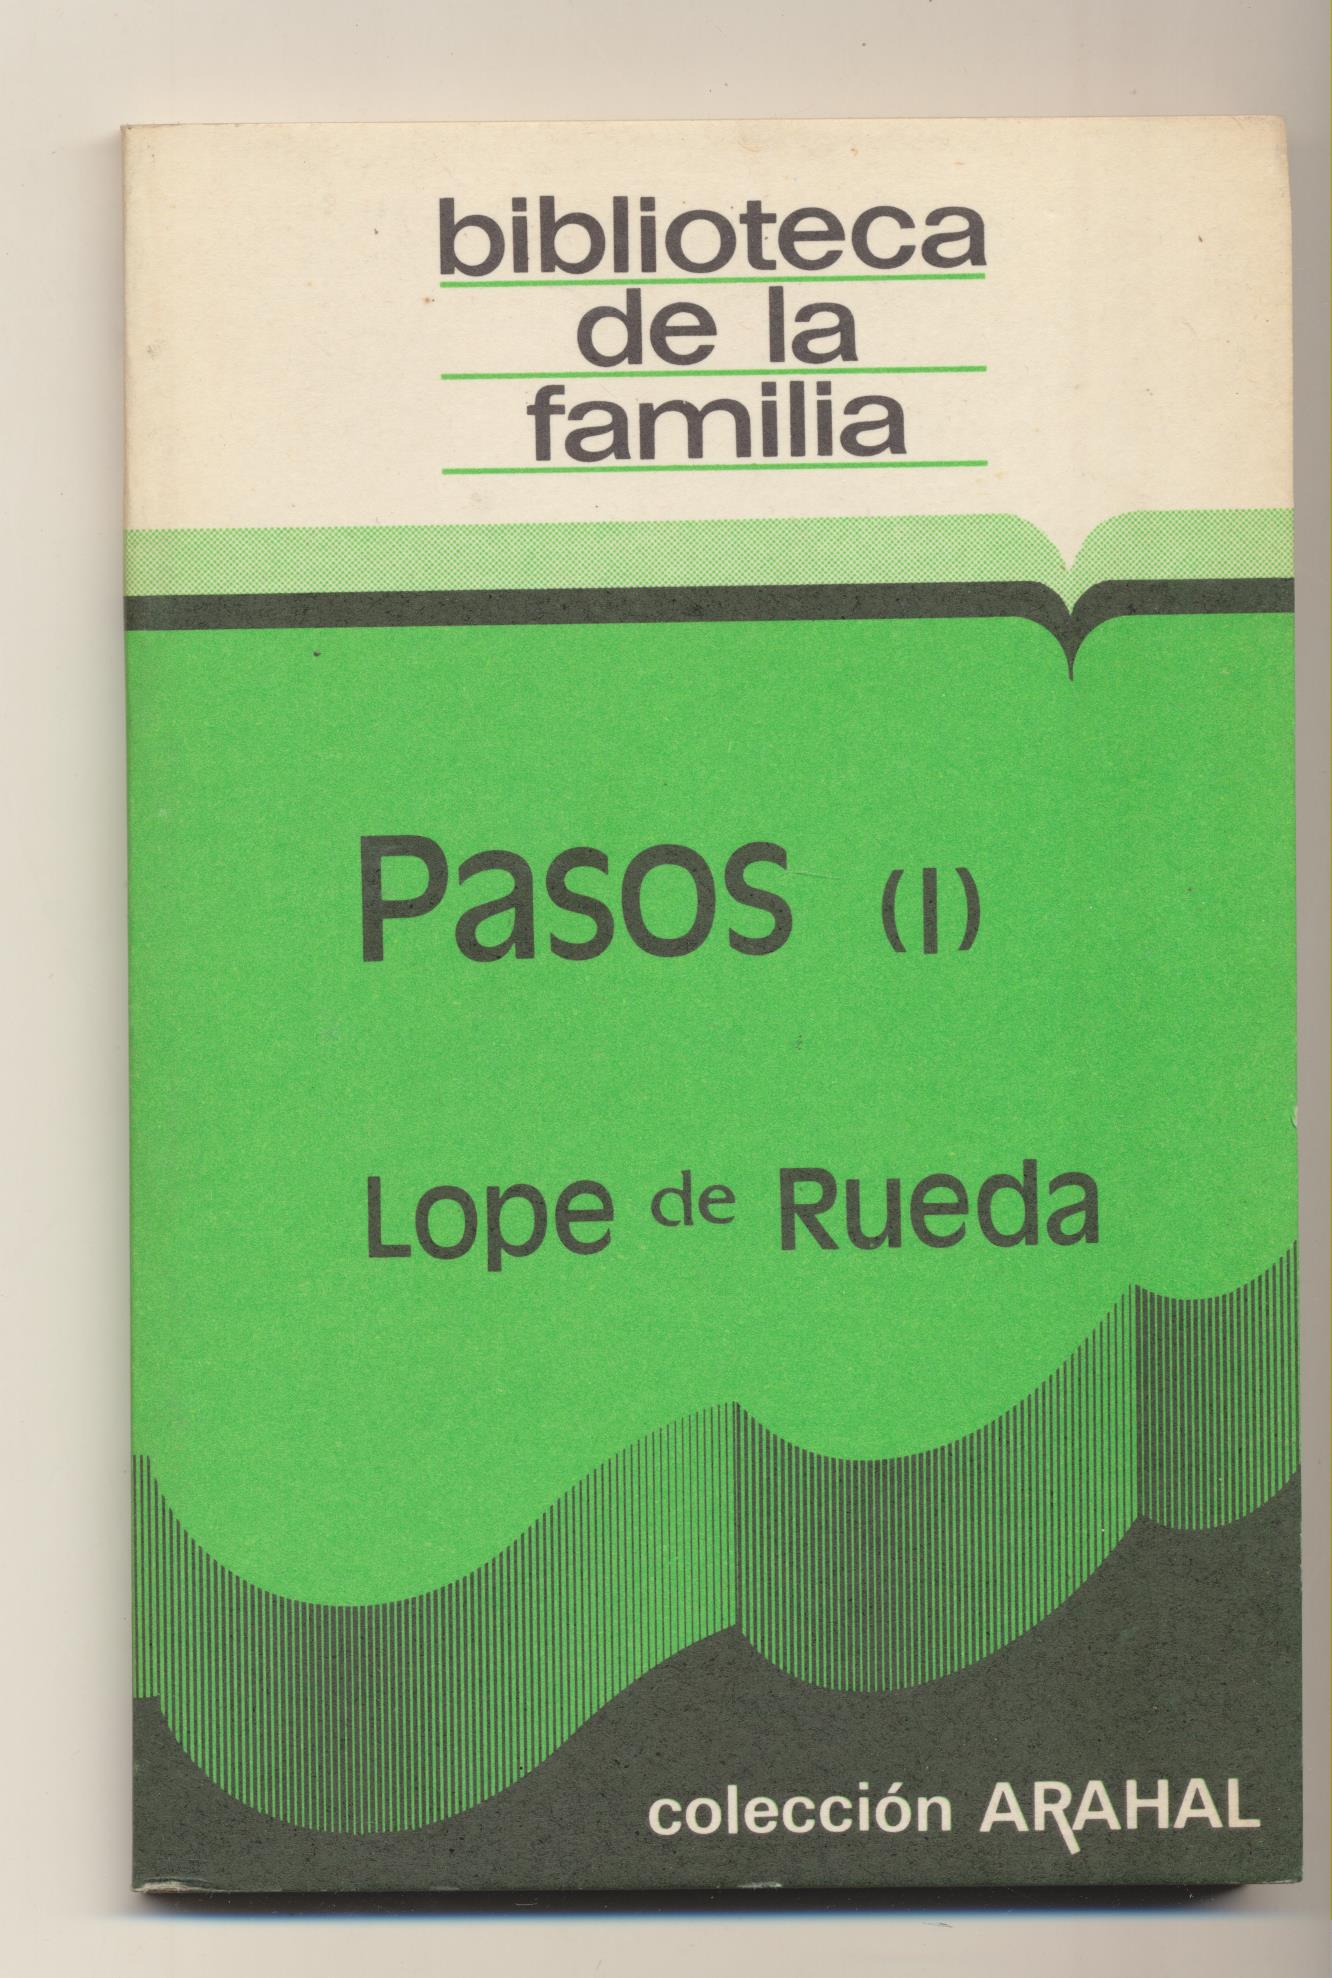 Pasos (I). Lope de Rueda. Colección Arahal 1982. SIN USAR